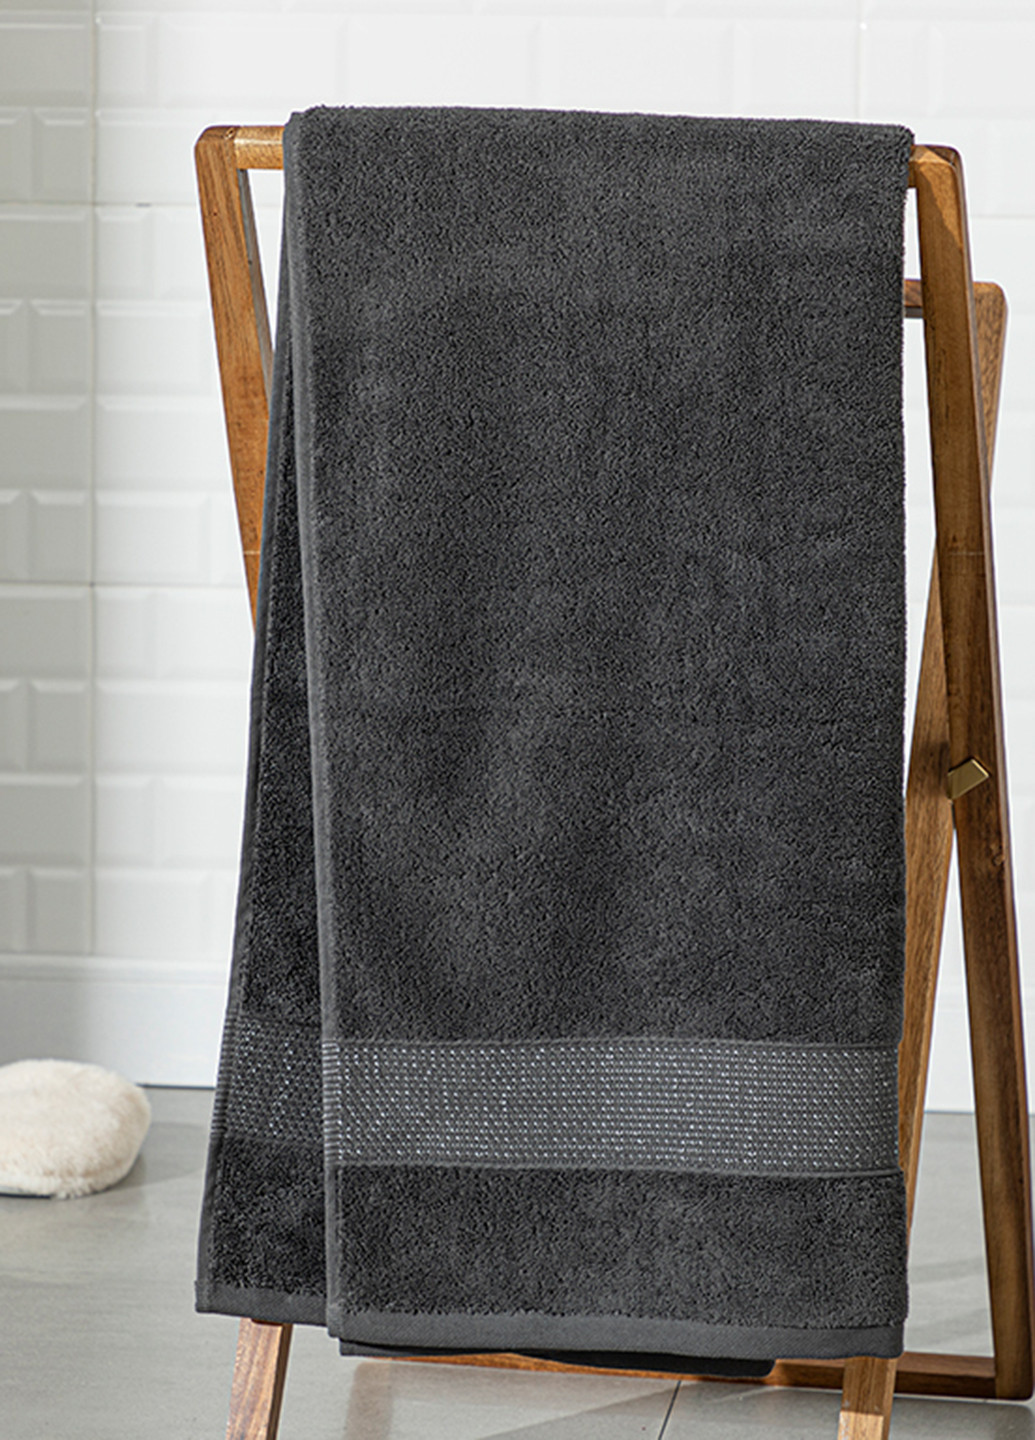 English Home полотенце, 70х140 см однотонный темно-серый производство - Турция